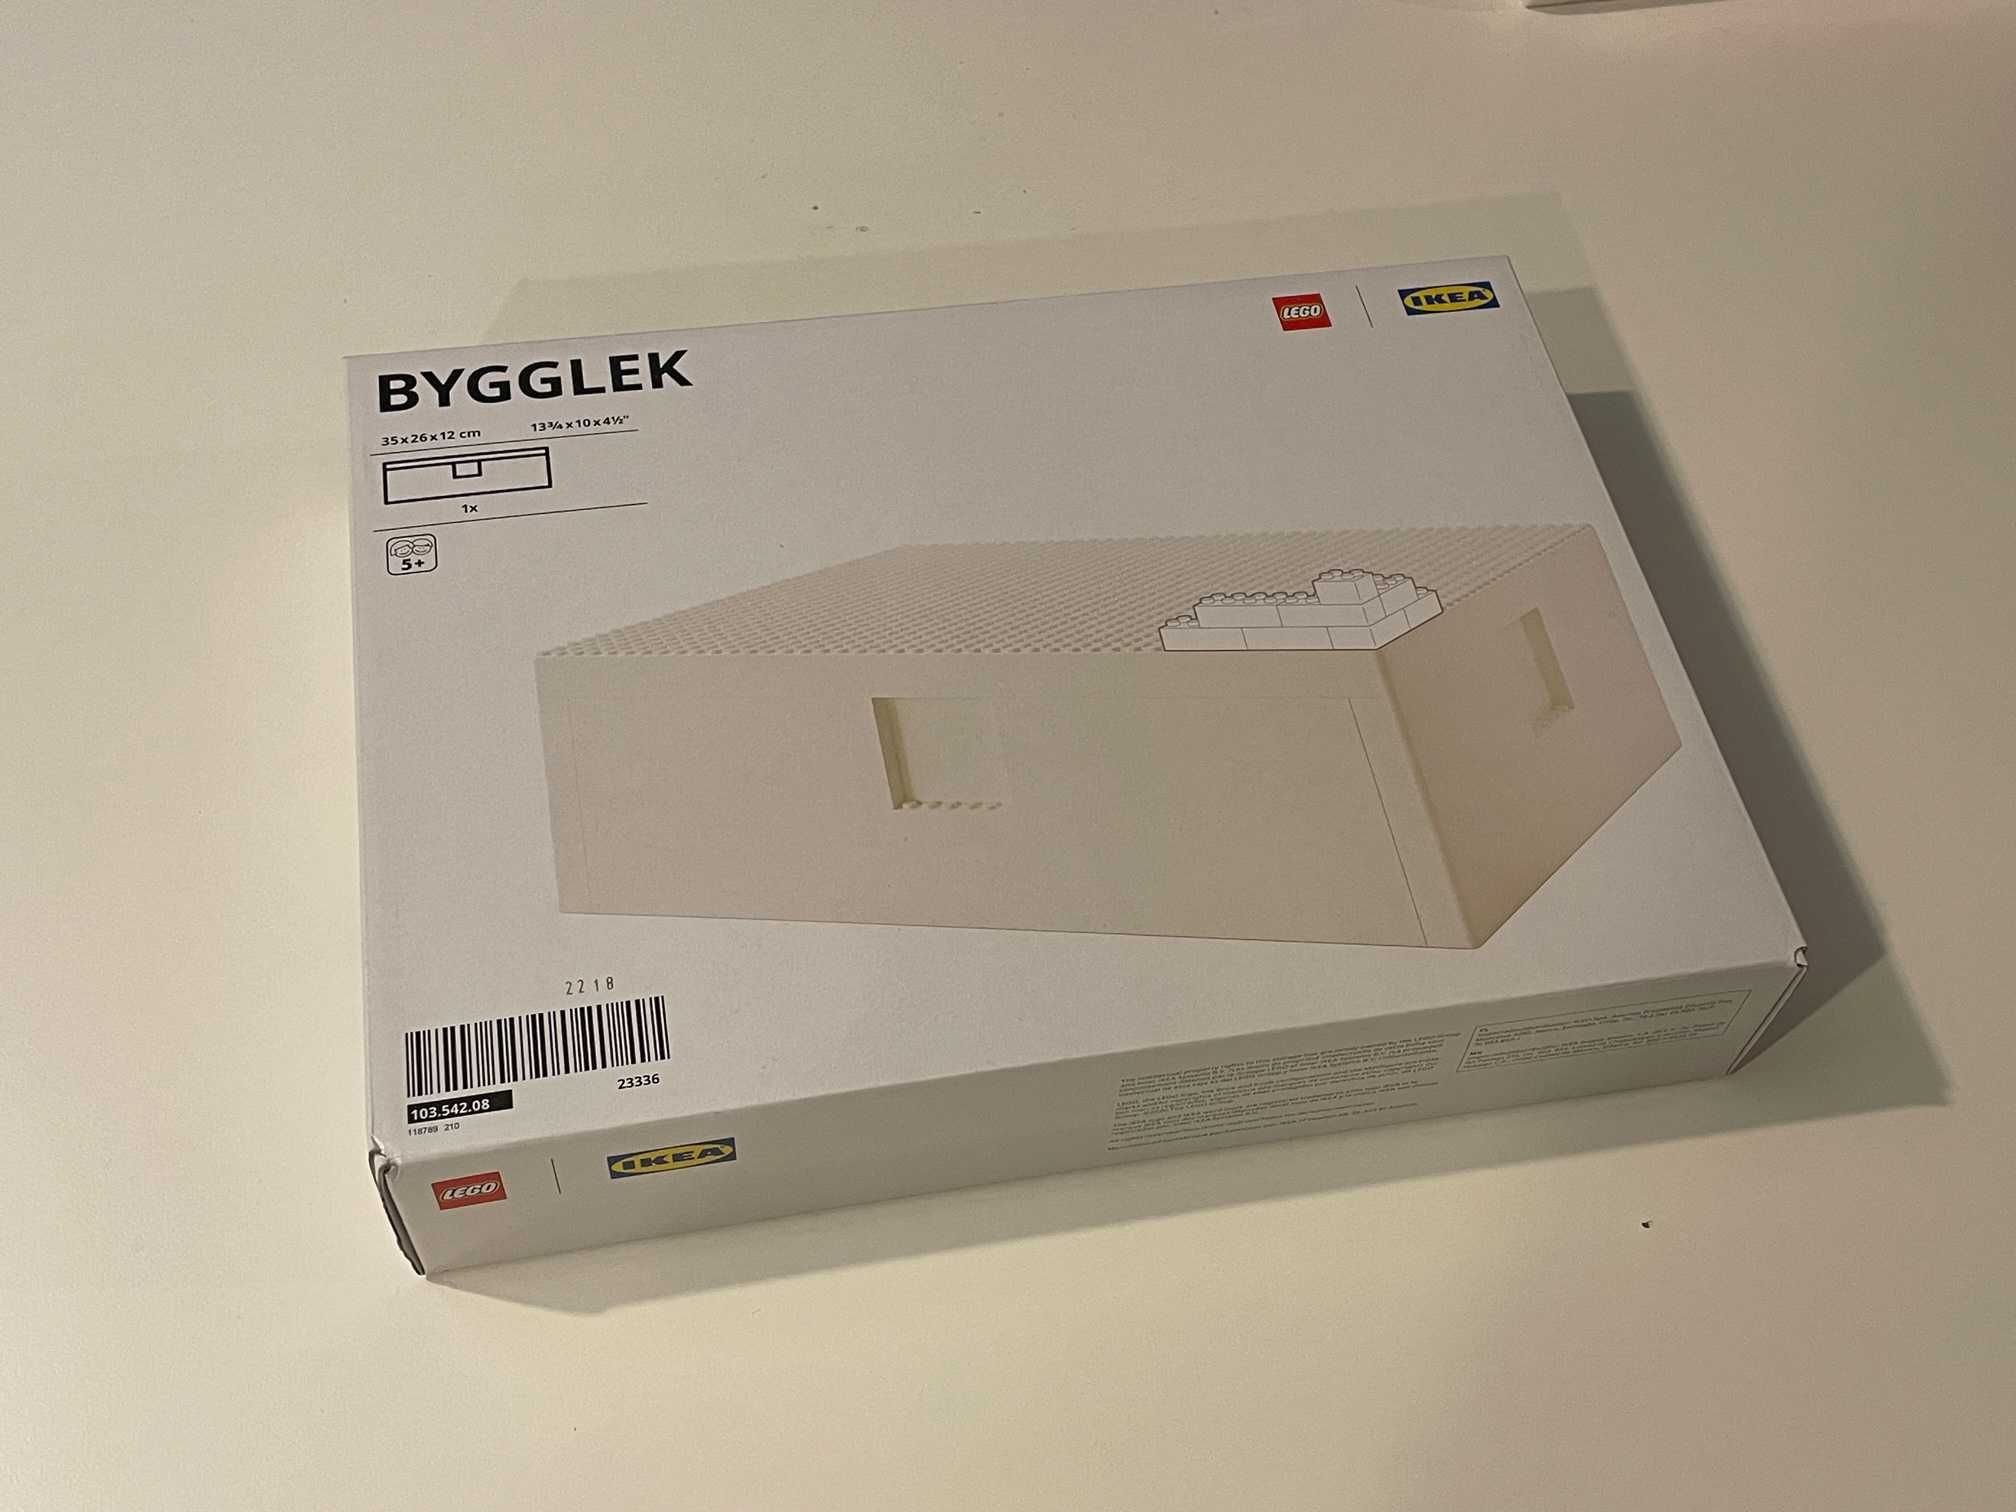 IKEA Bygglek - duże pudełko 35x26x12 cm